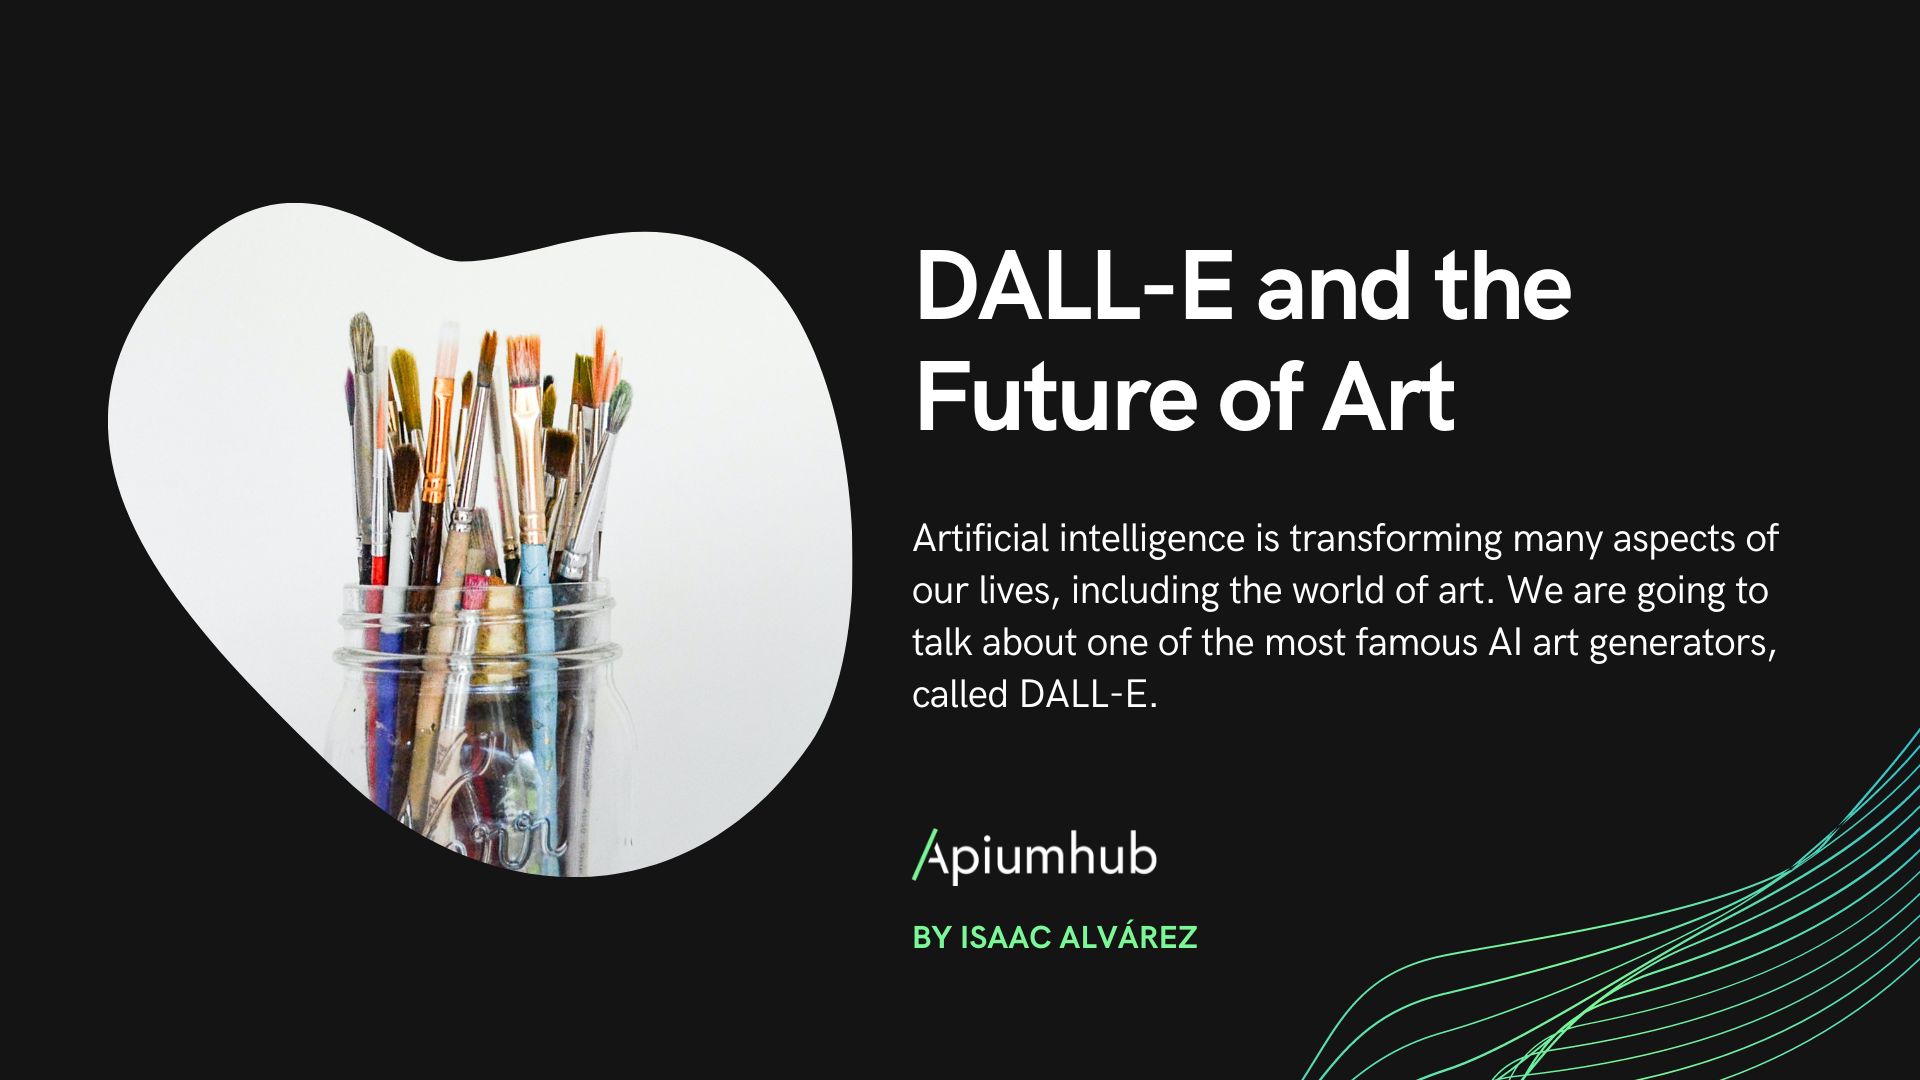 DALL-E and the future of art